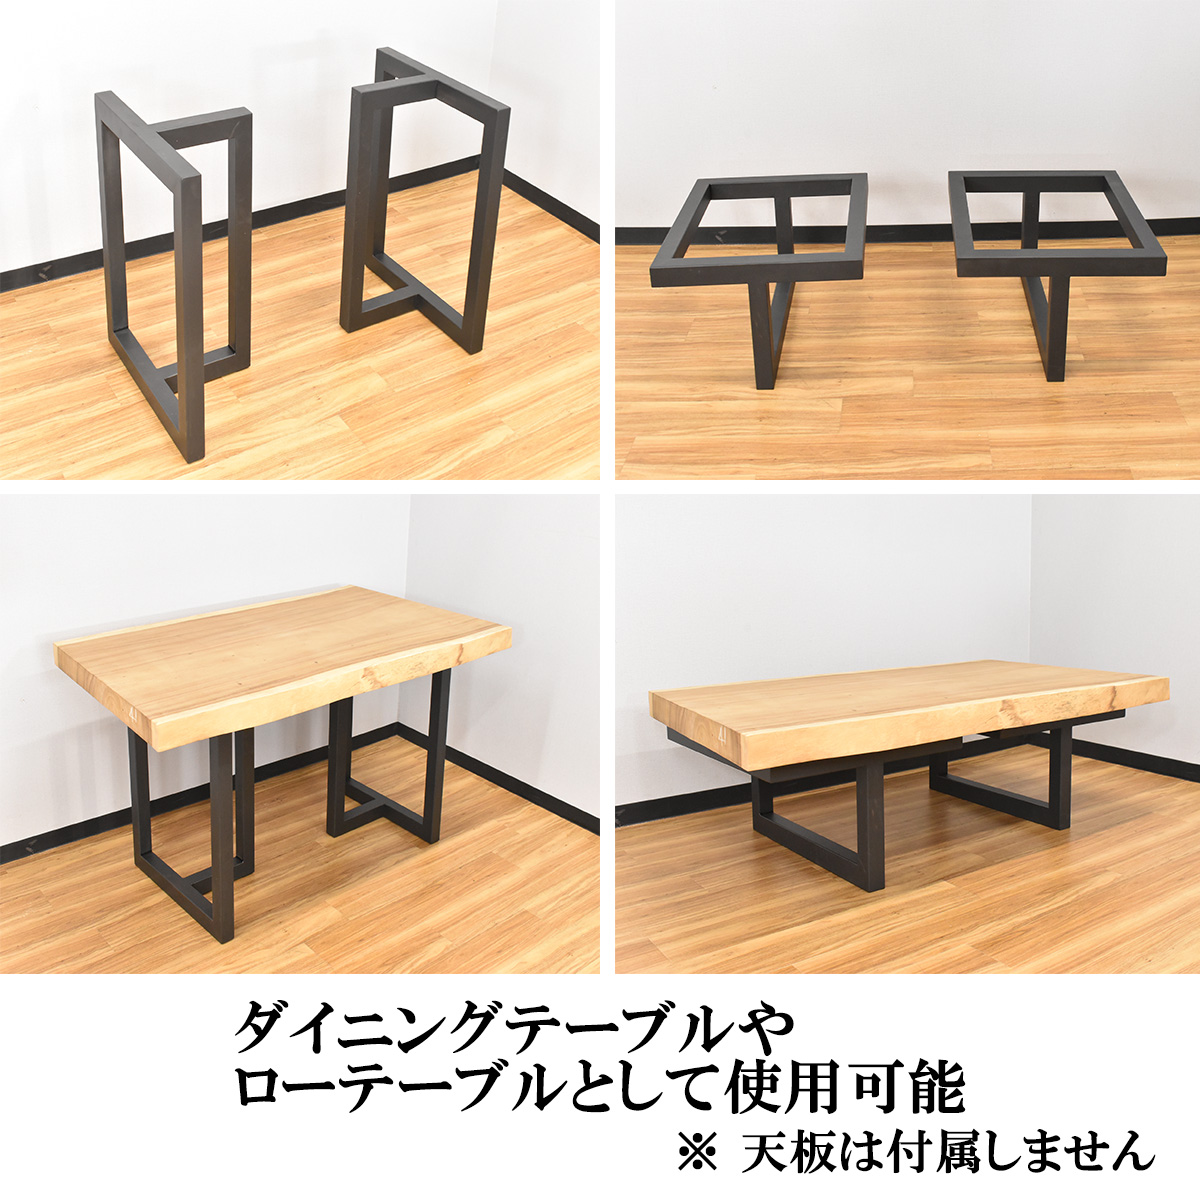 楽天市場ダイニングテーブル用脚 高耐荷重 テーブル天板用 一枚板用